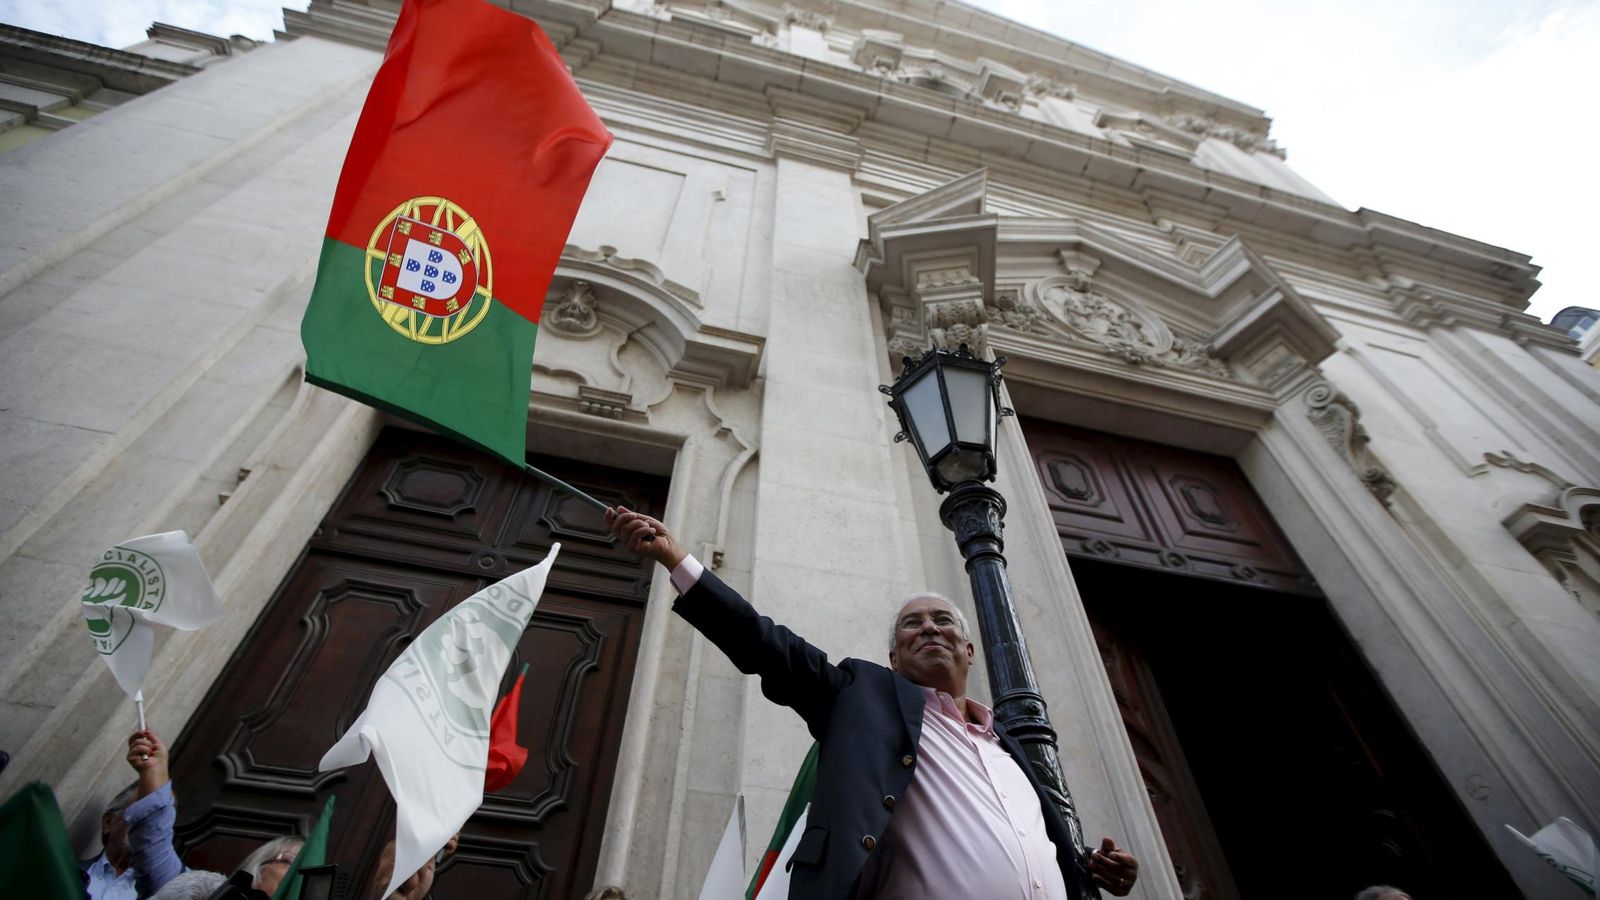 Foto: El líder del PS, Antonio Costa, con una bandera de Portugal durante un mitin electoral en Lisboa, el 2 de octubre de 2015 (Reuters).